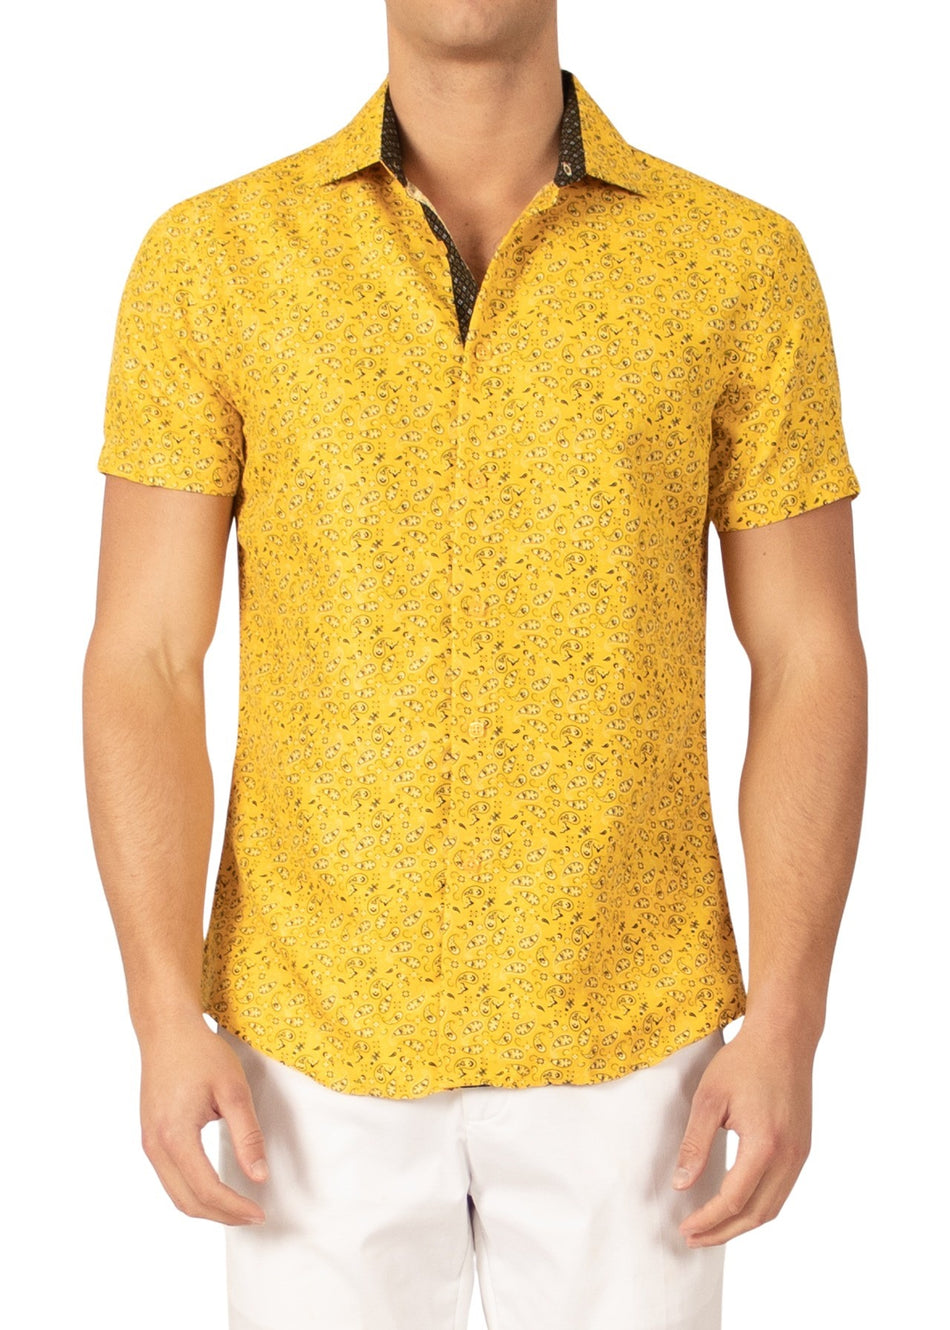 222096 - Yellow Button Up Short Sleeve Shirt